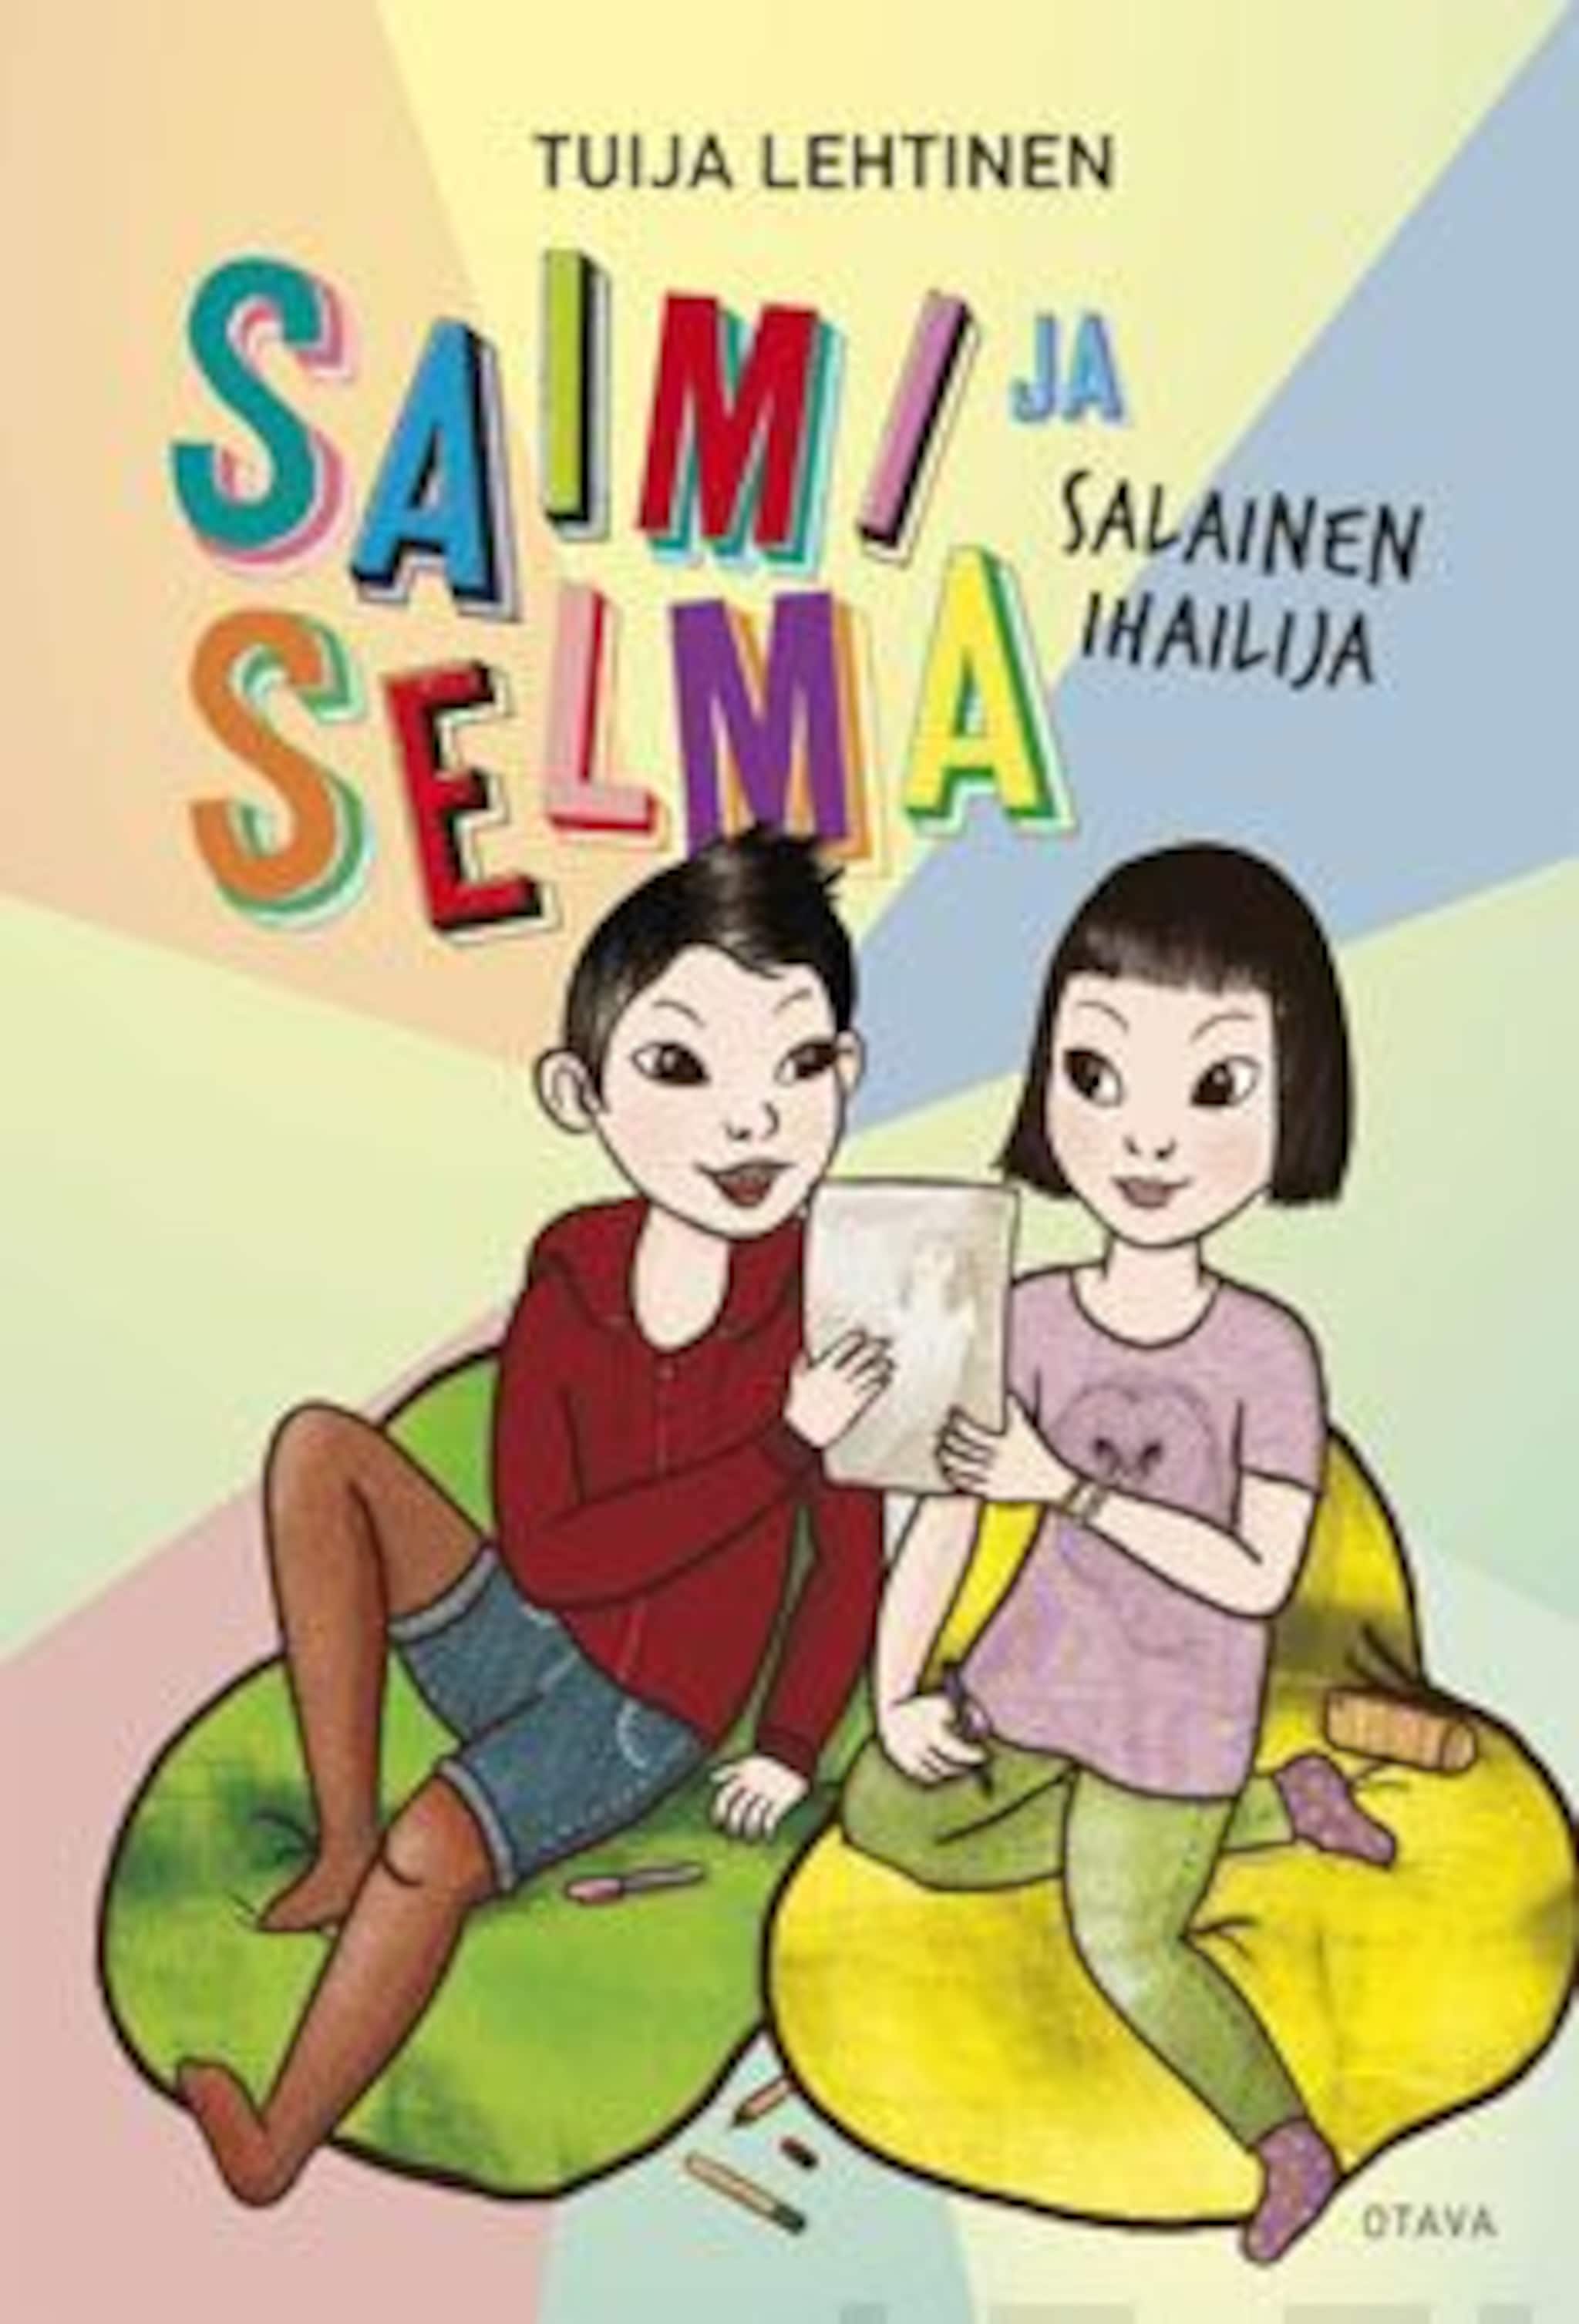 Saimi ja Selma ilmaiseksi